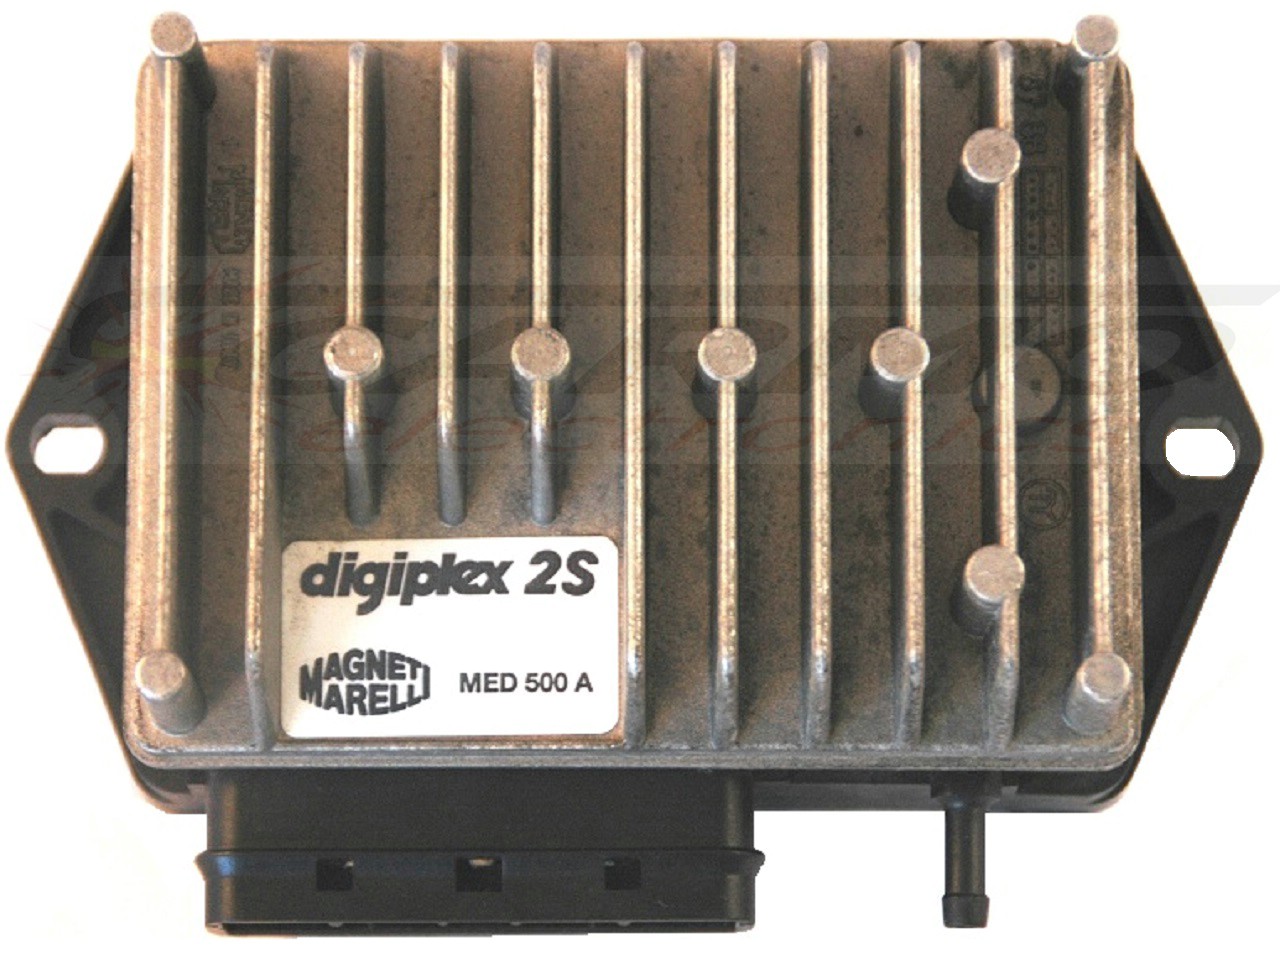 Ducati Moto Guzzi Digiplex 2S igniter ignition module CDI TCI Box MED441A, MED442A, MED446A, MED500A, MED501A, MED902A - Click Image to Close